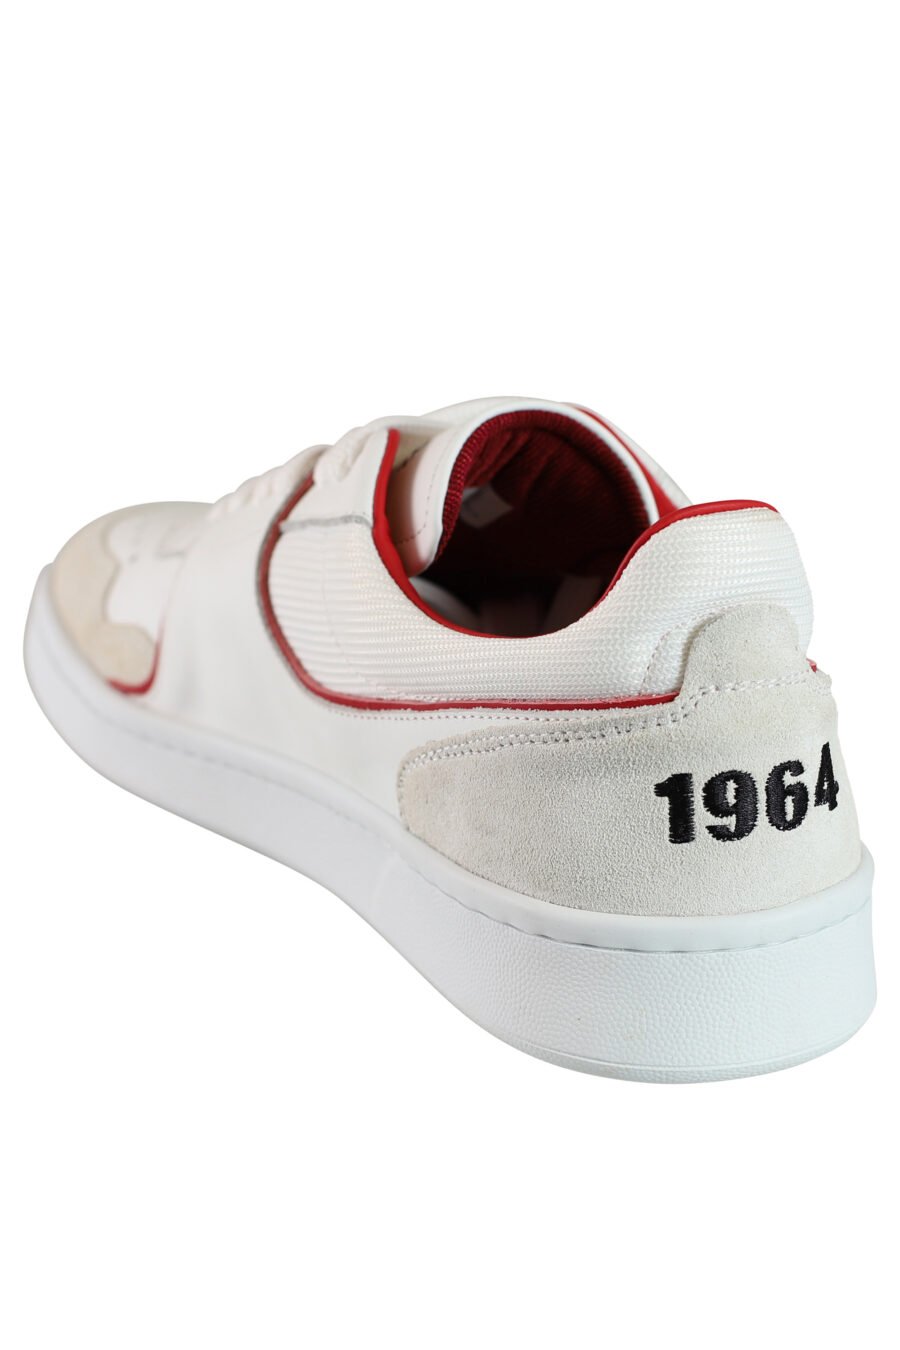 Zapatillas blancas mix con logo y detalles en rojo - 8055777188194 4